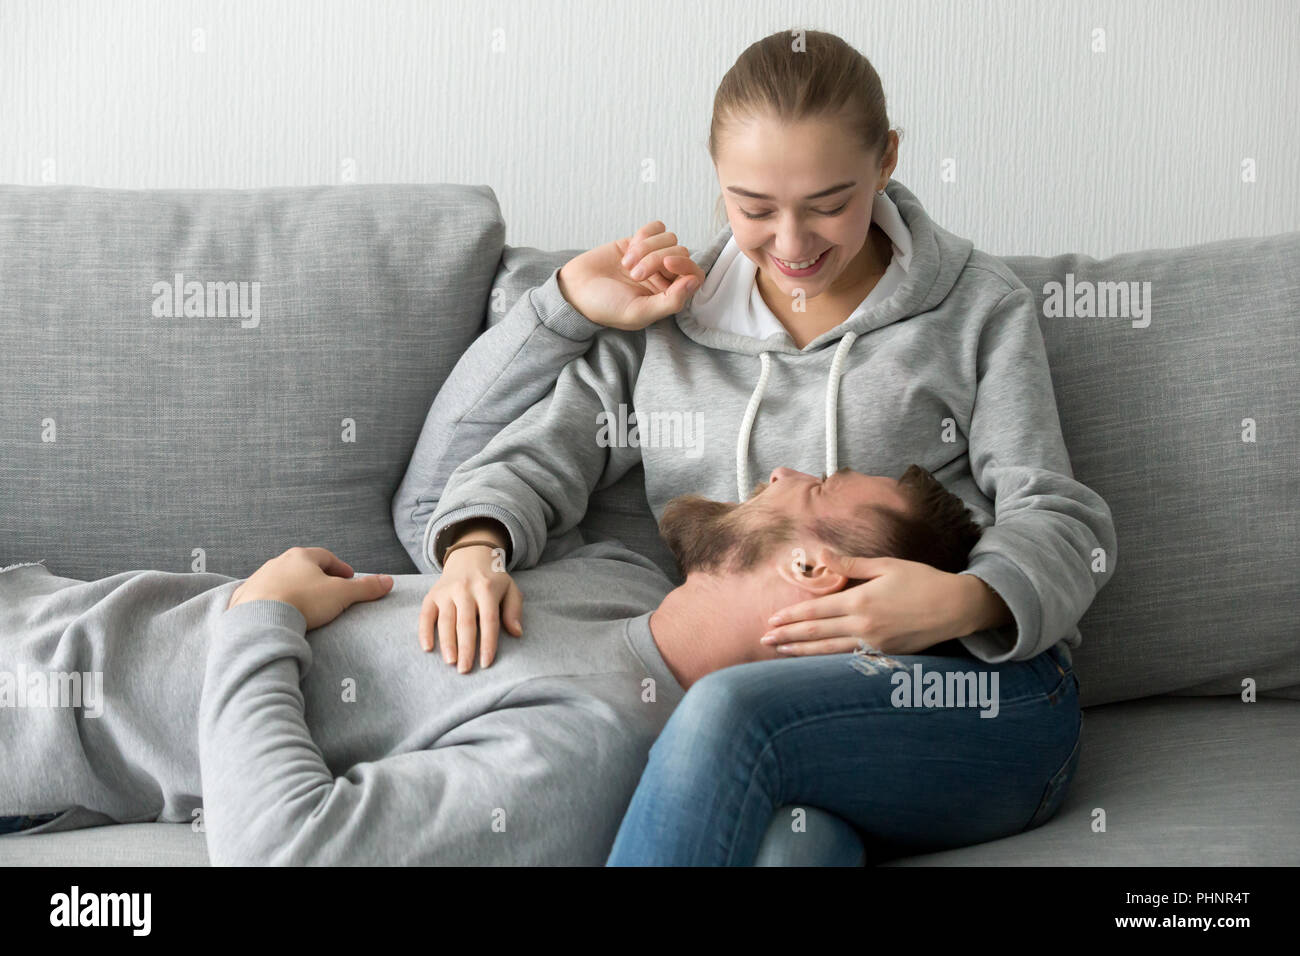 Sorridente ragazza carezza rilassante amante in ginocchio sul lettino Foto Stock